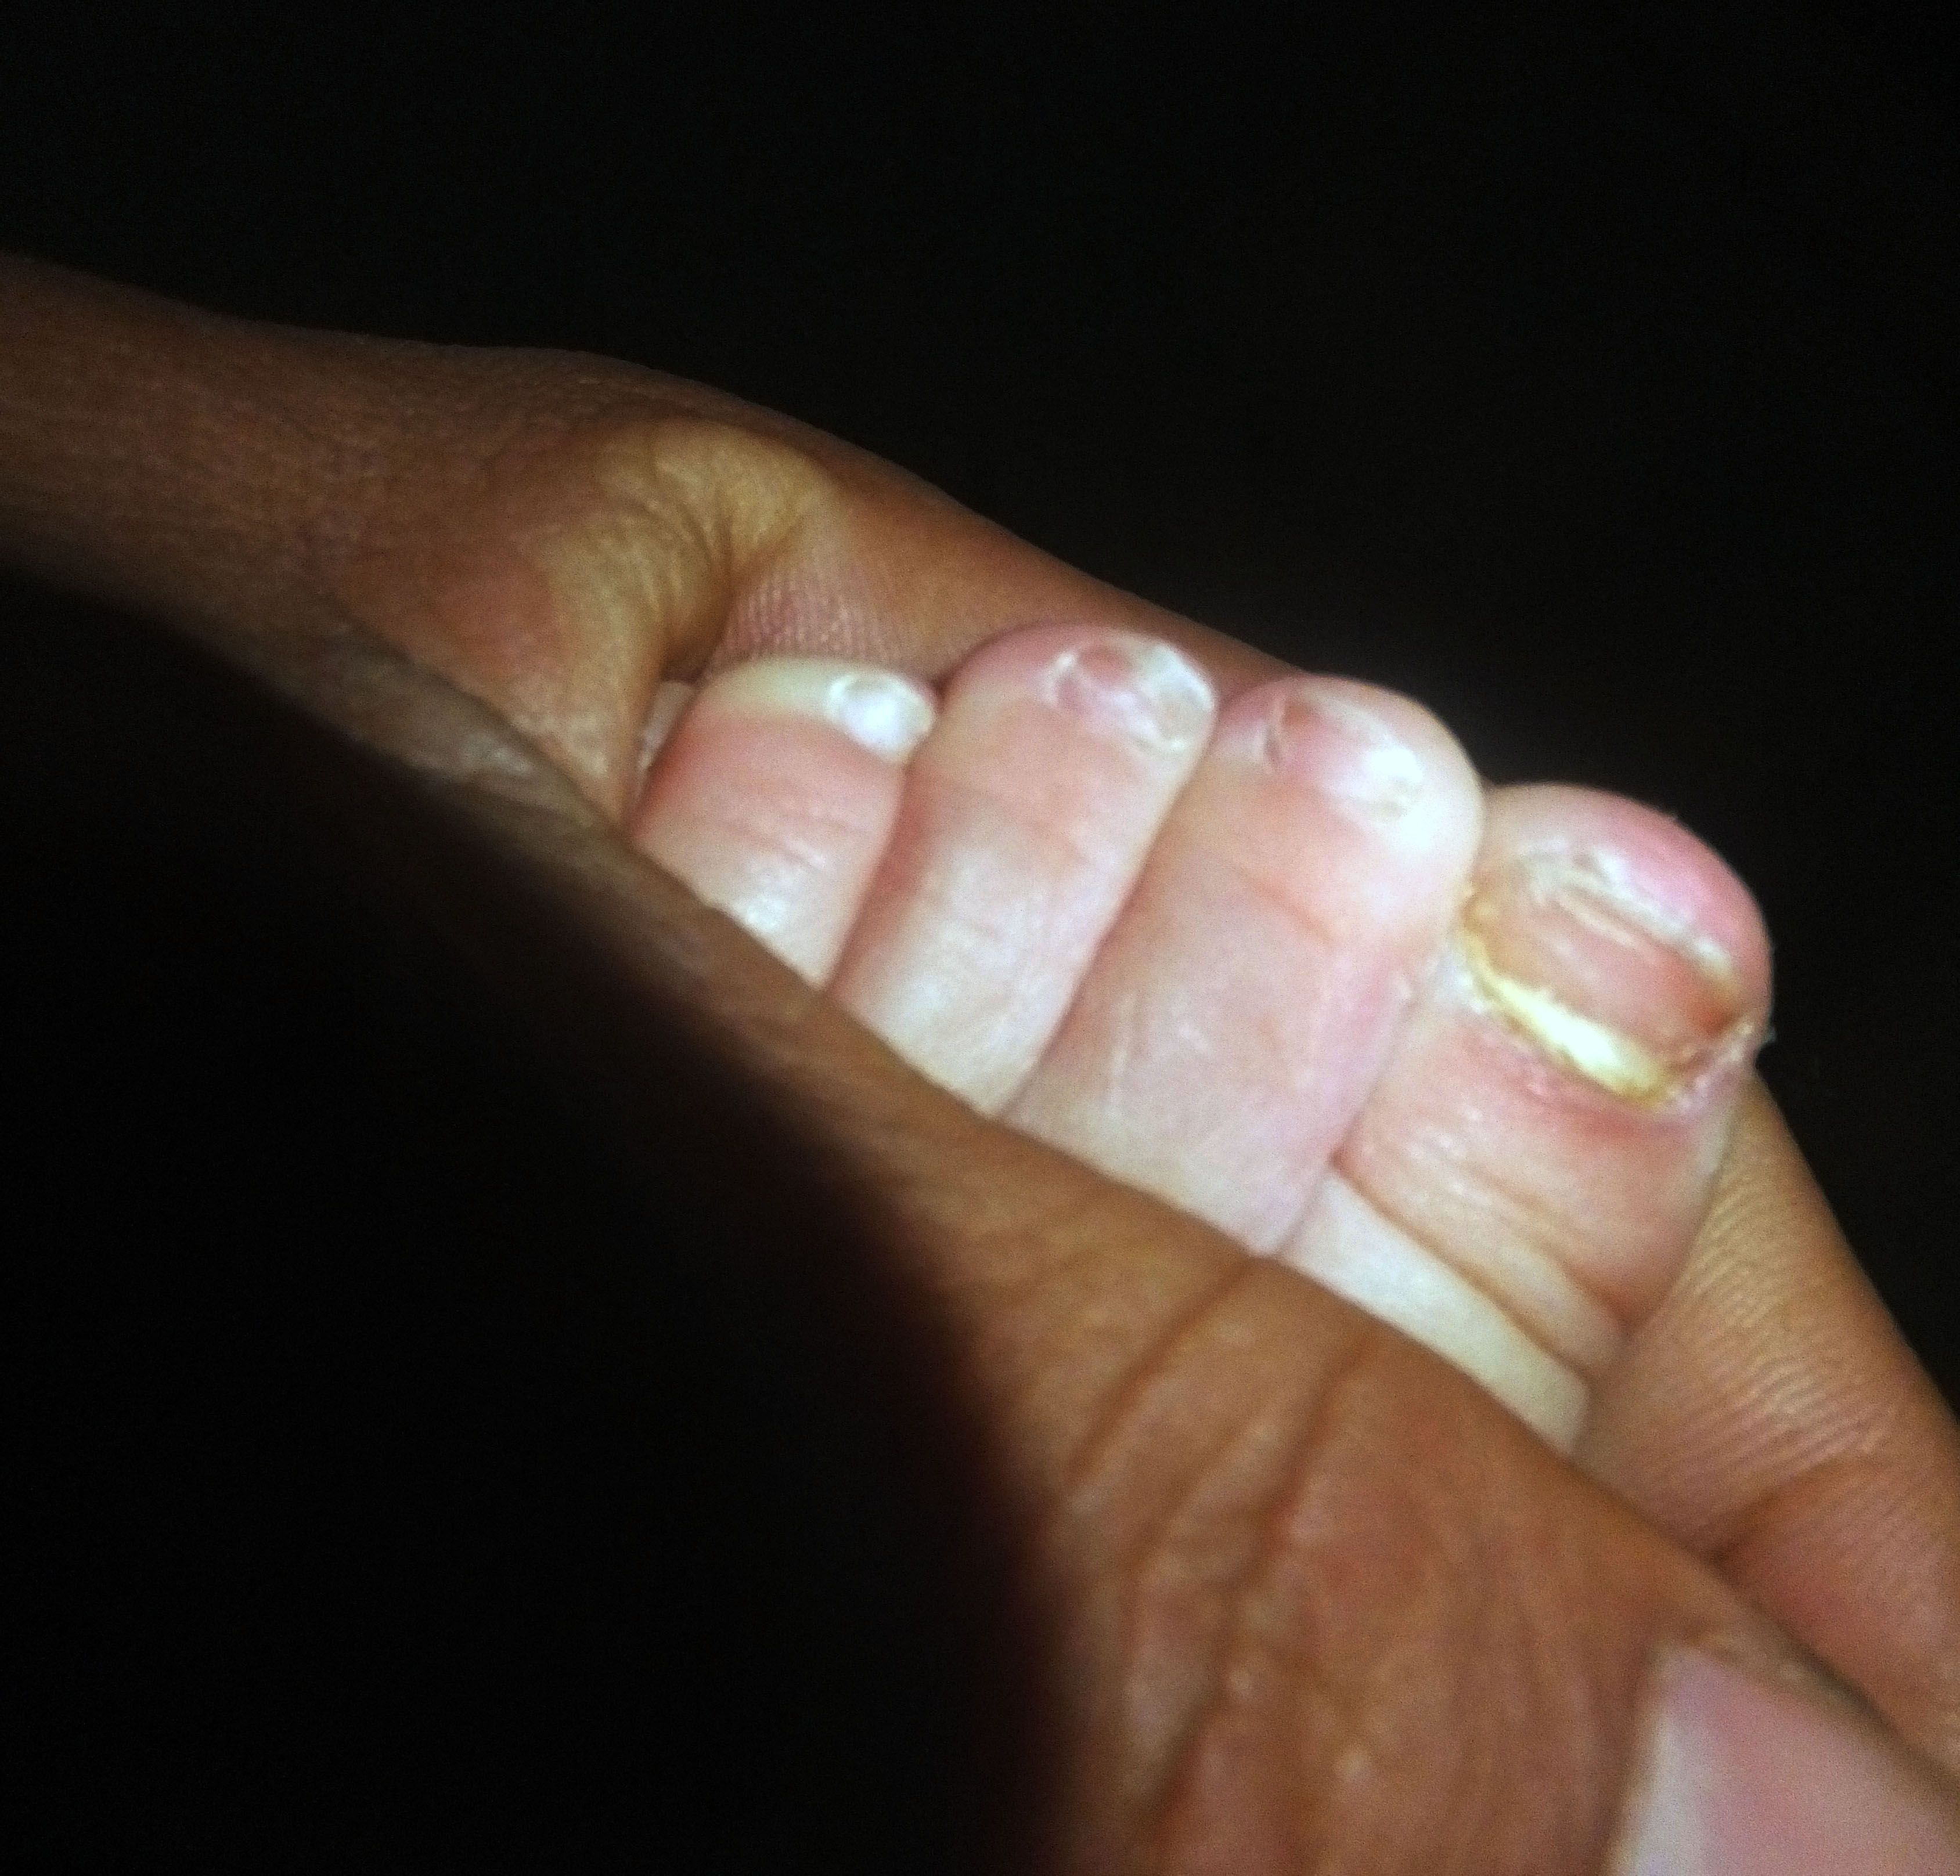 我家宝宝21个月了今天发现左脚拇指有灰指甲,这么小的就有灰指甲该用